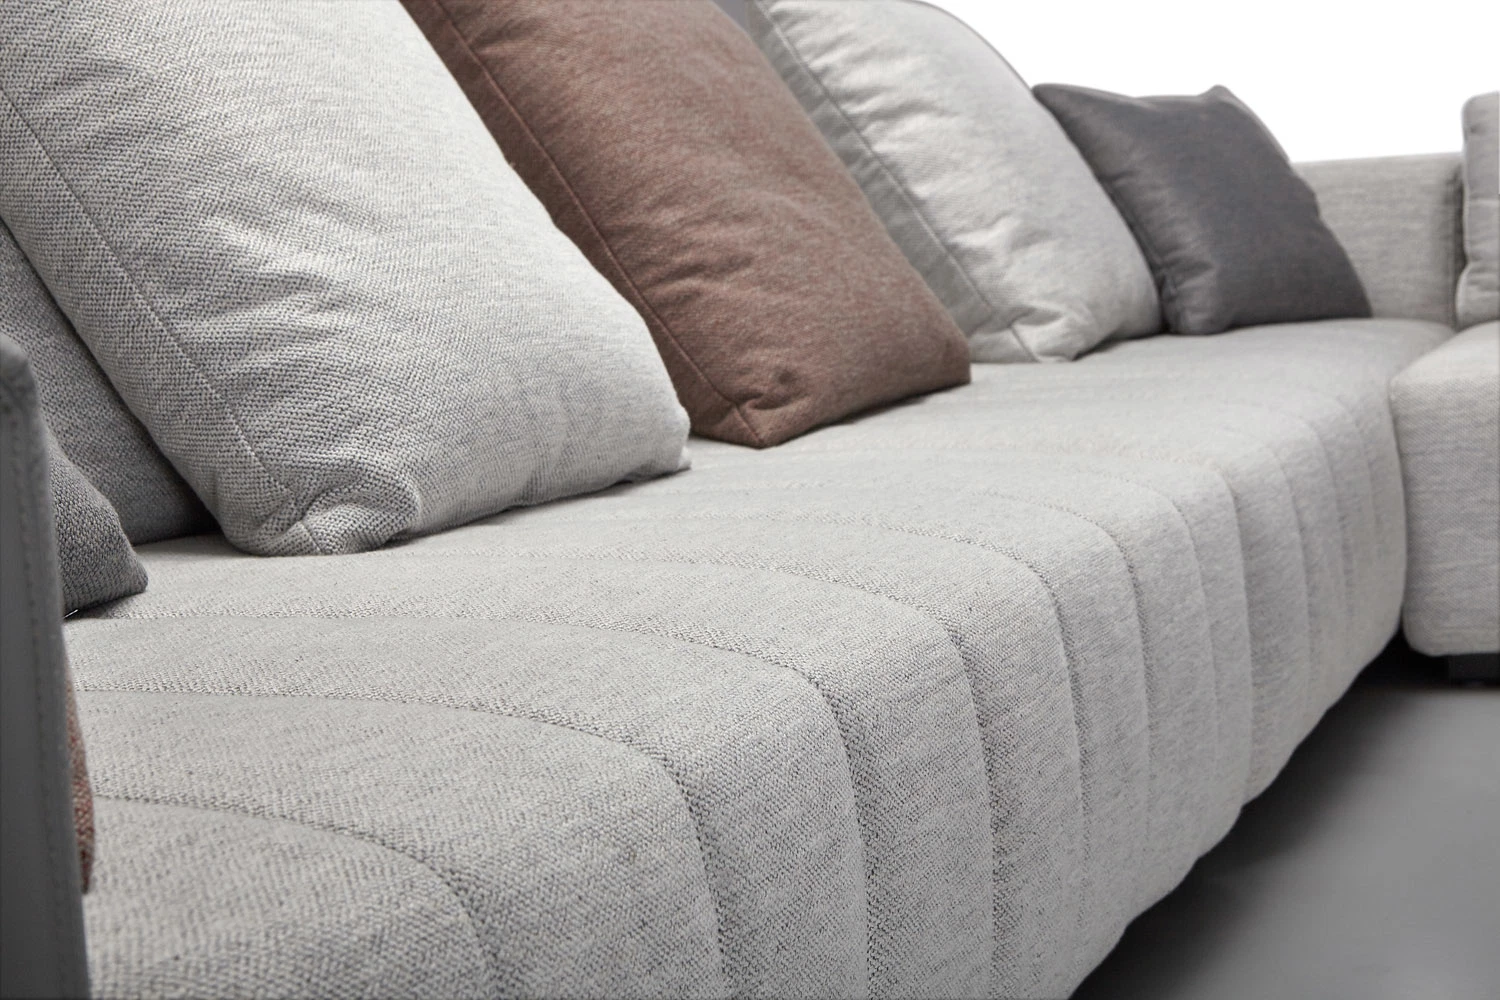 أثاث منزل إيطالي معاصر حديث لفيلا المعيشة غرفة ديفان أريكة جلدية مقطعية من القماش وأريكة يمكن تحويلها إلى سرير